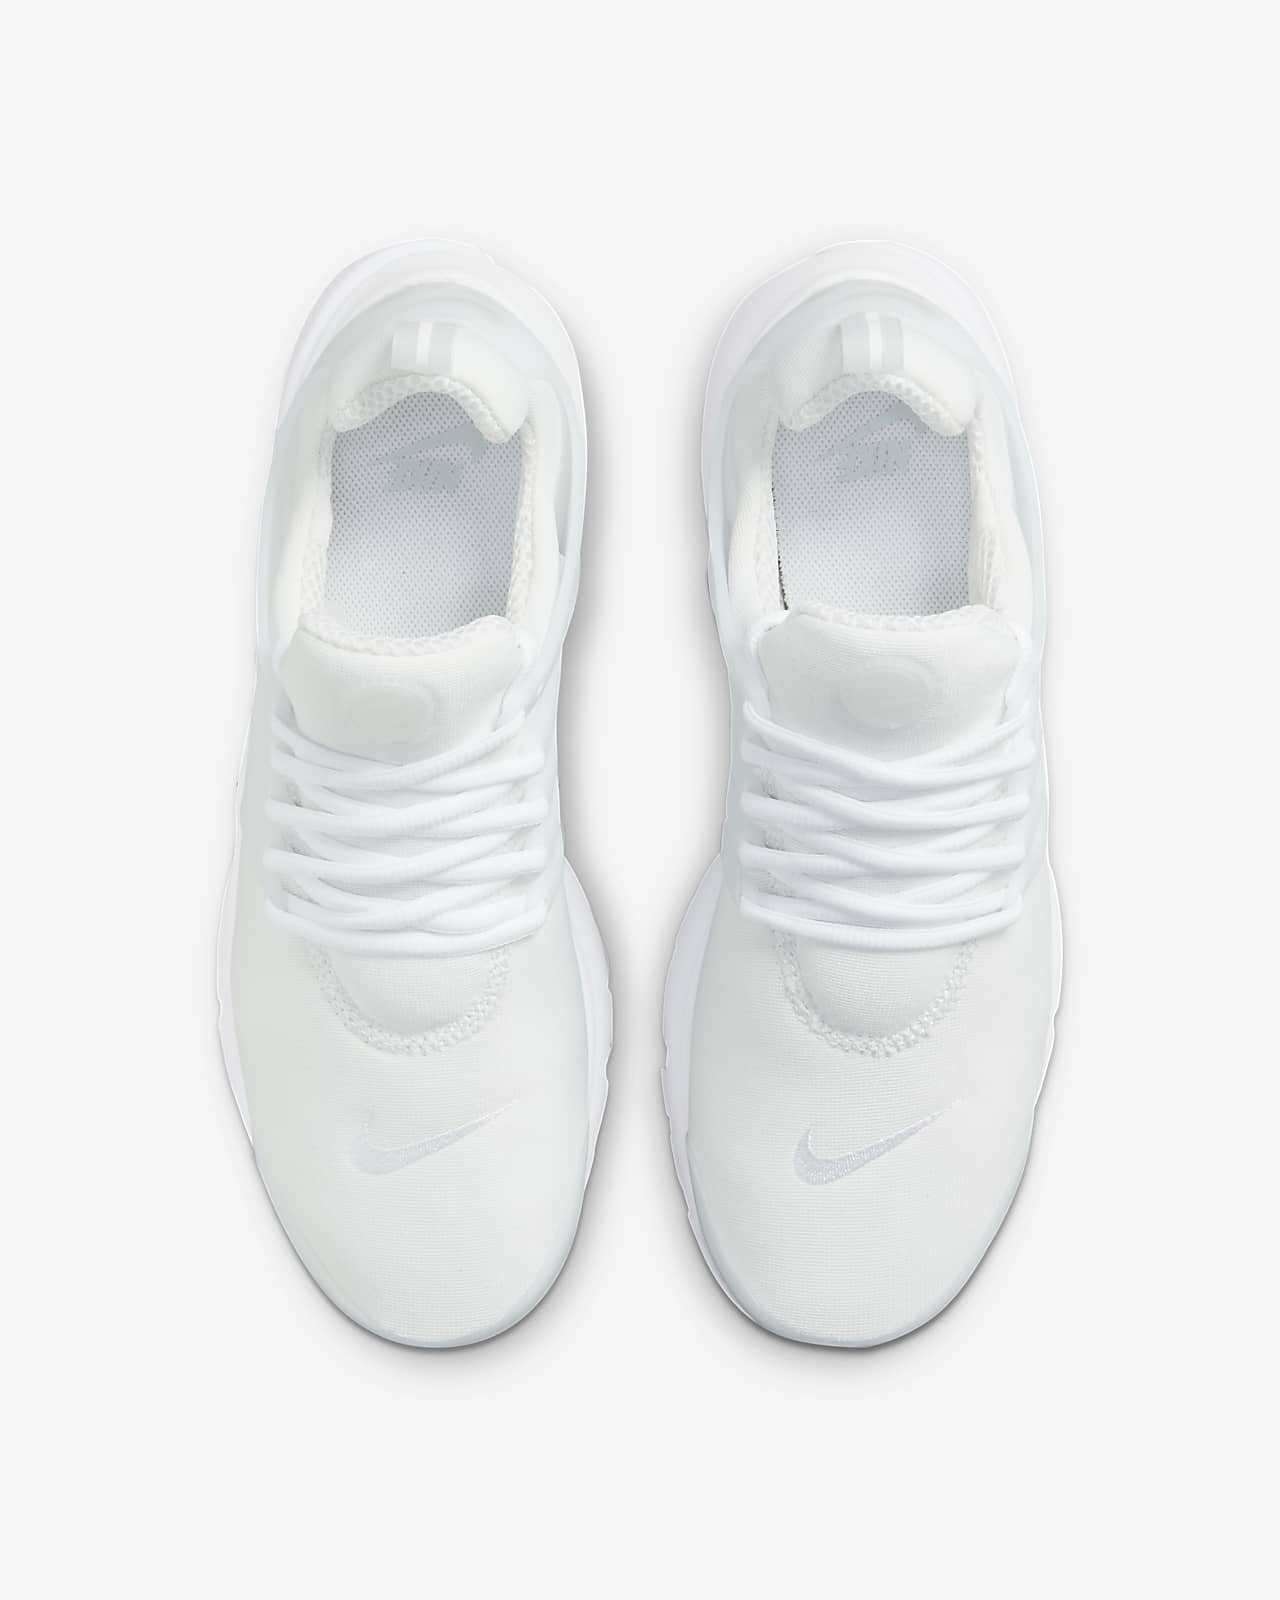 Nike Cortez Ultra White/Black; Apr2016 | Sneakers men fashion, Mens nike  shoes, Nike fashion